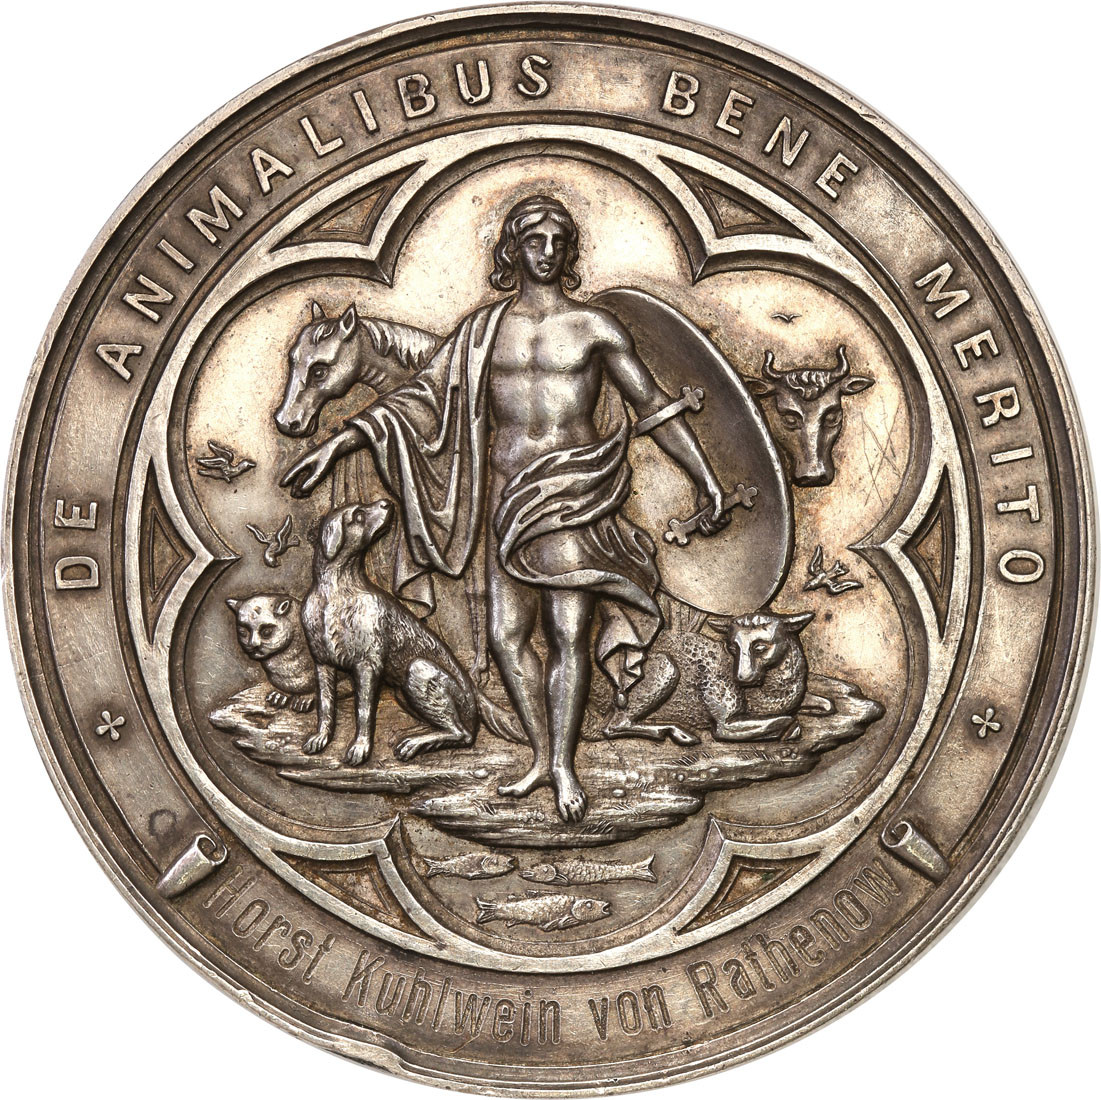 Niemcy, Monachium. Medal Towarzystwa Przyjaciół Zwierząt